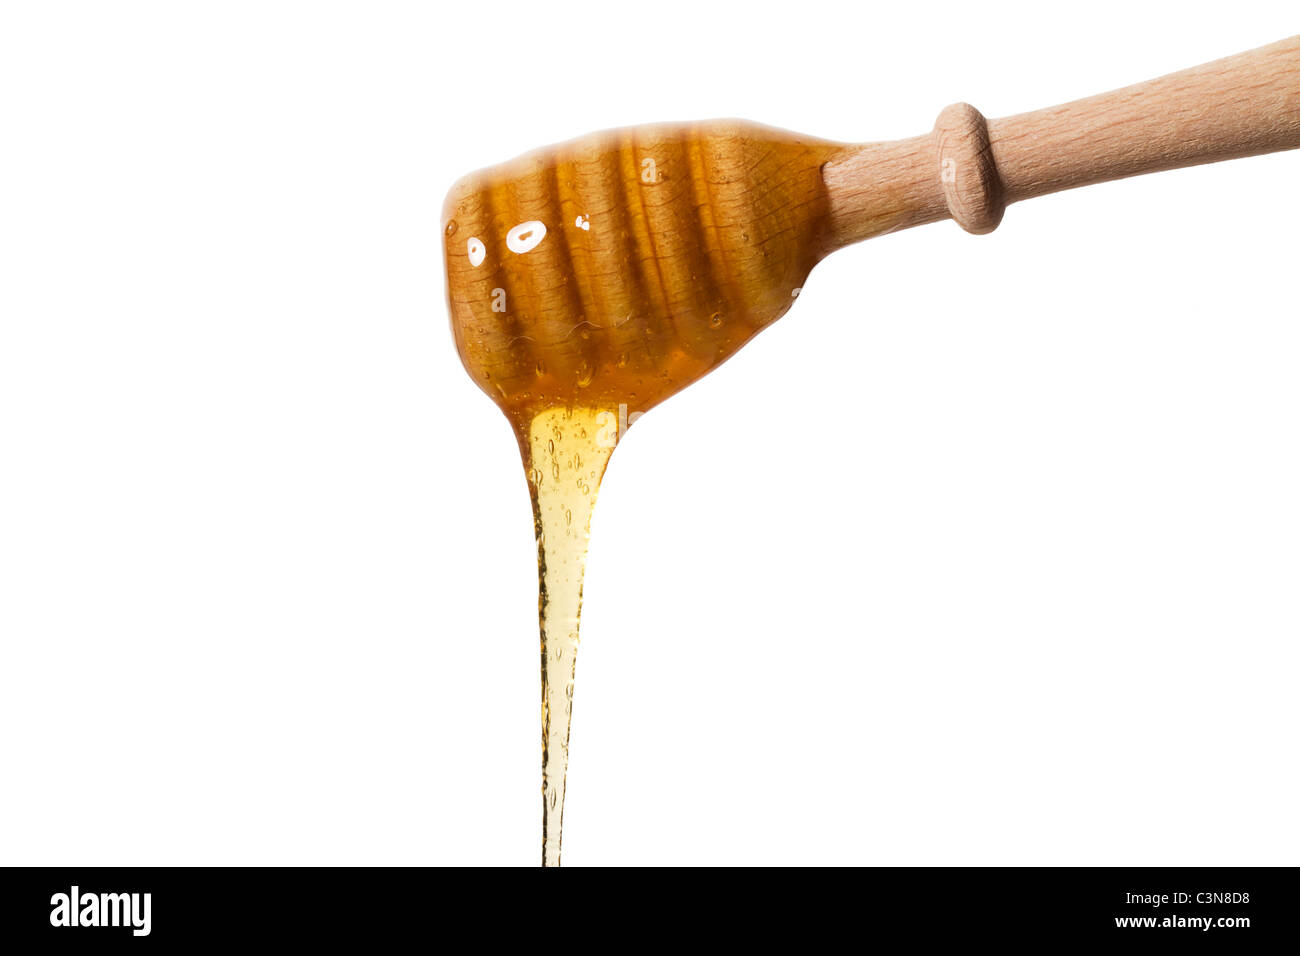 Le miel Le miel la chute d'un balancier sur fond blanc Banque D'Images